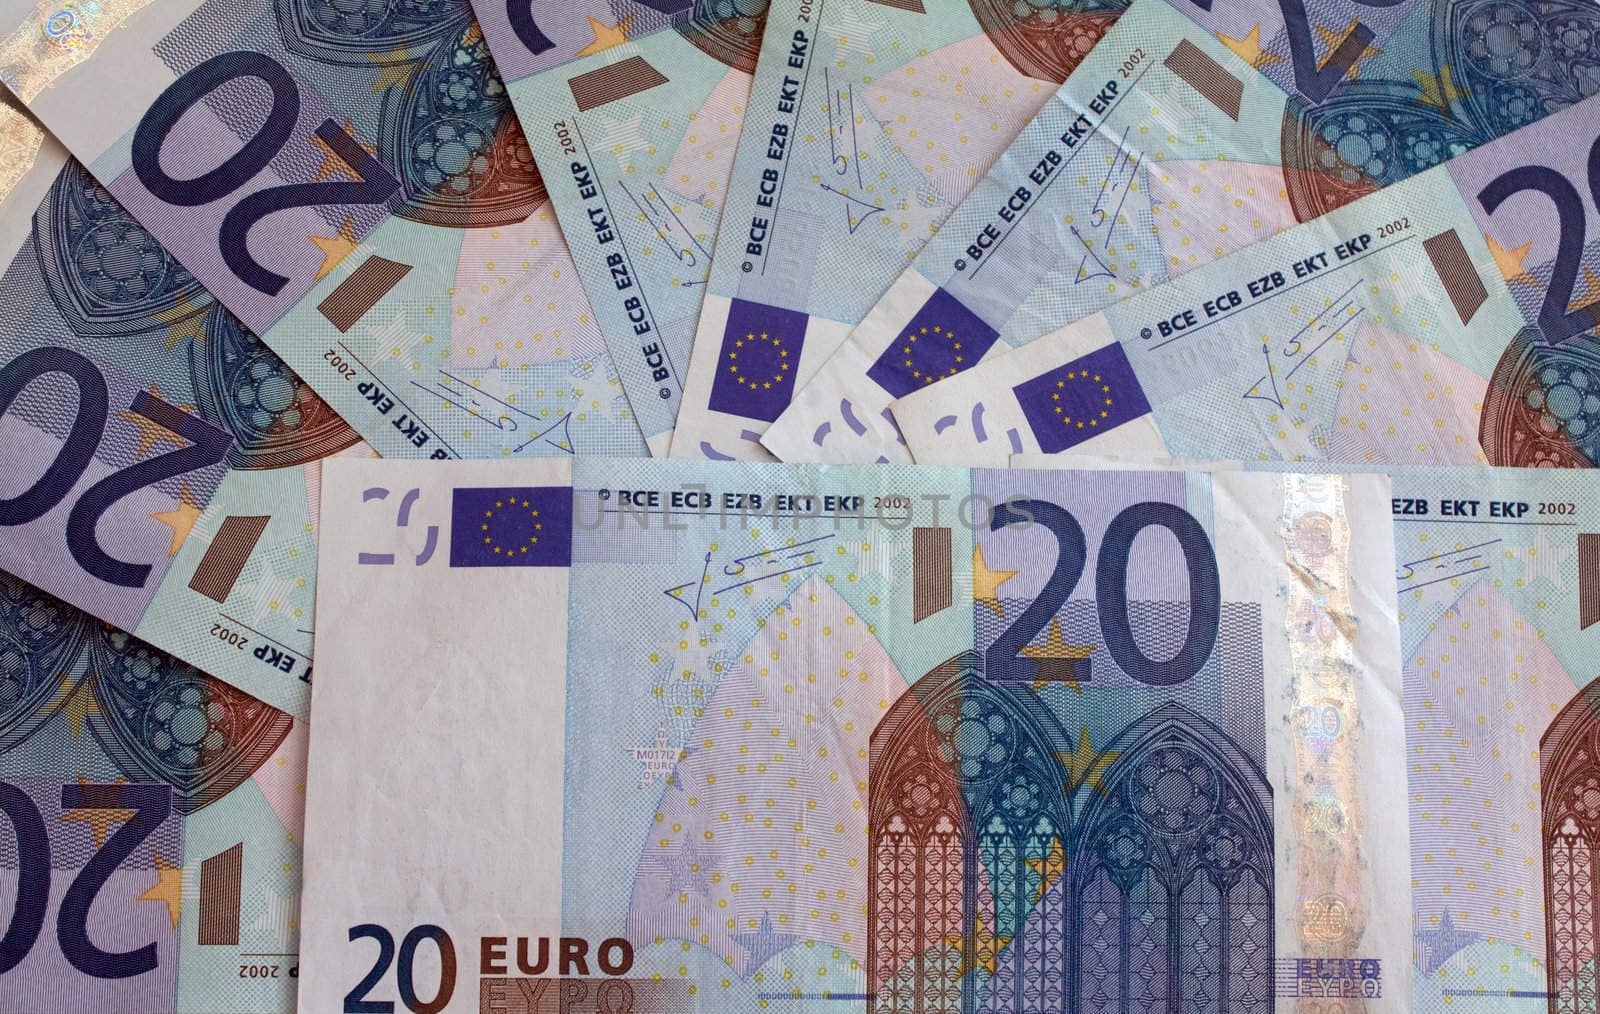 twenty euro notes arranged in a fan shape